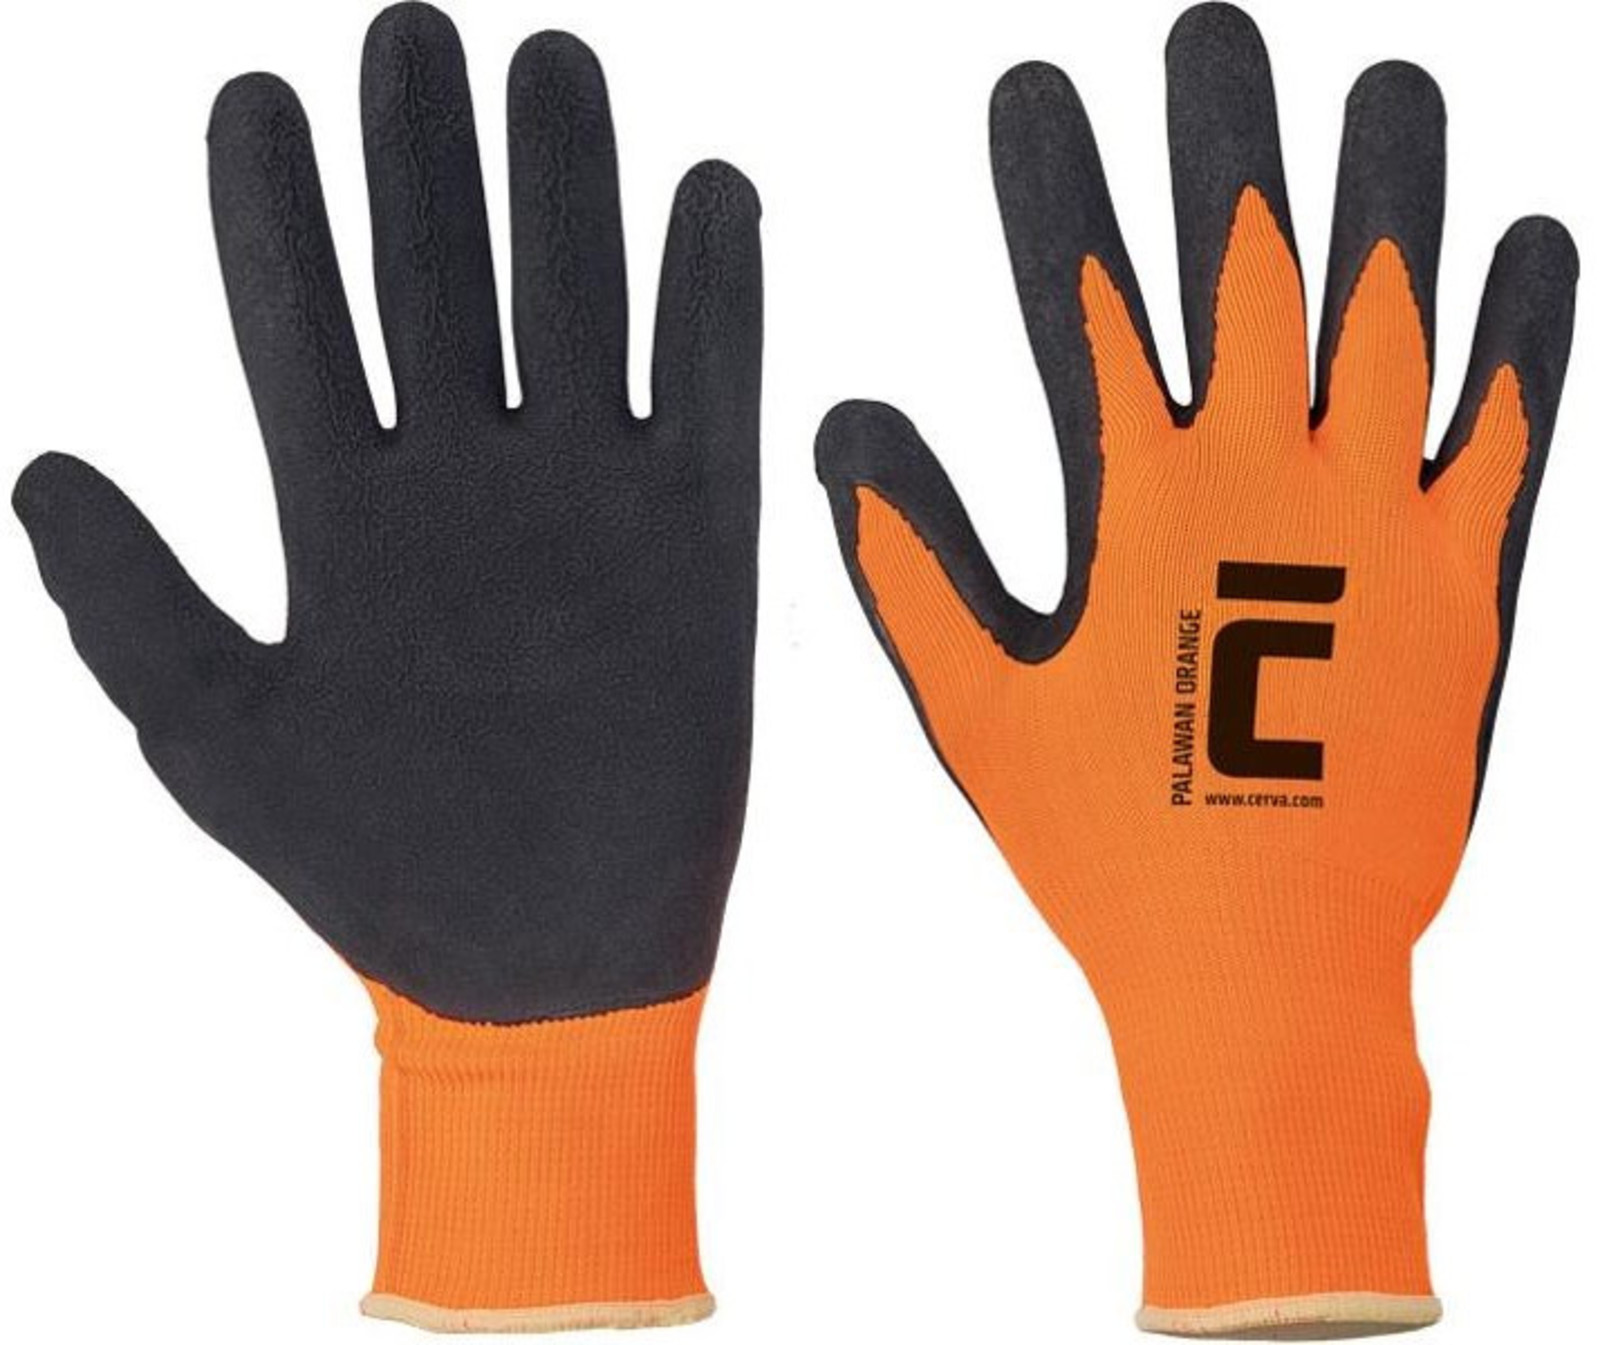 Pracovné rukavice Cerva Palawan - veľkosť: 10/XL, farba: oranžová